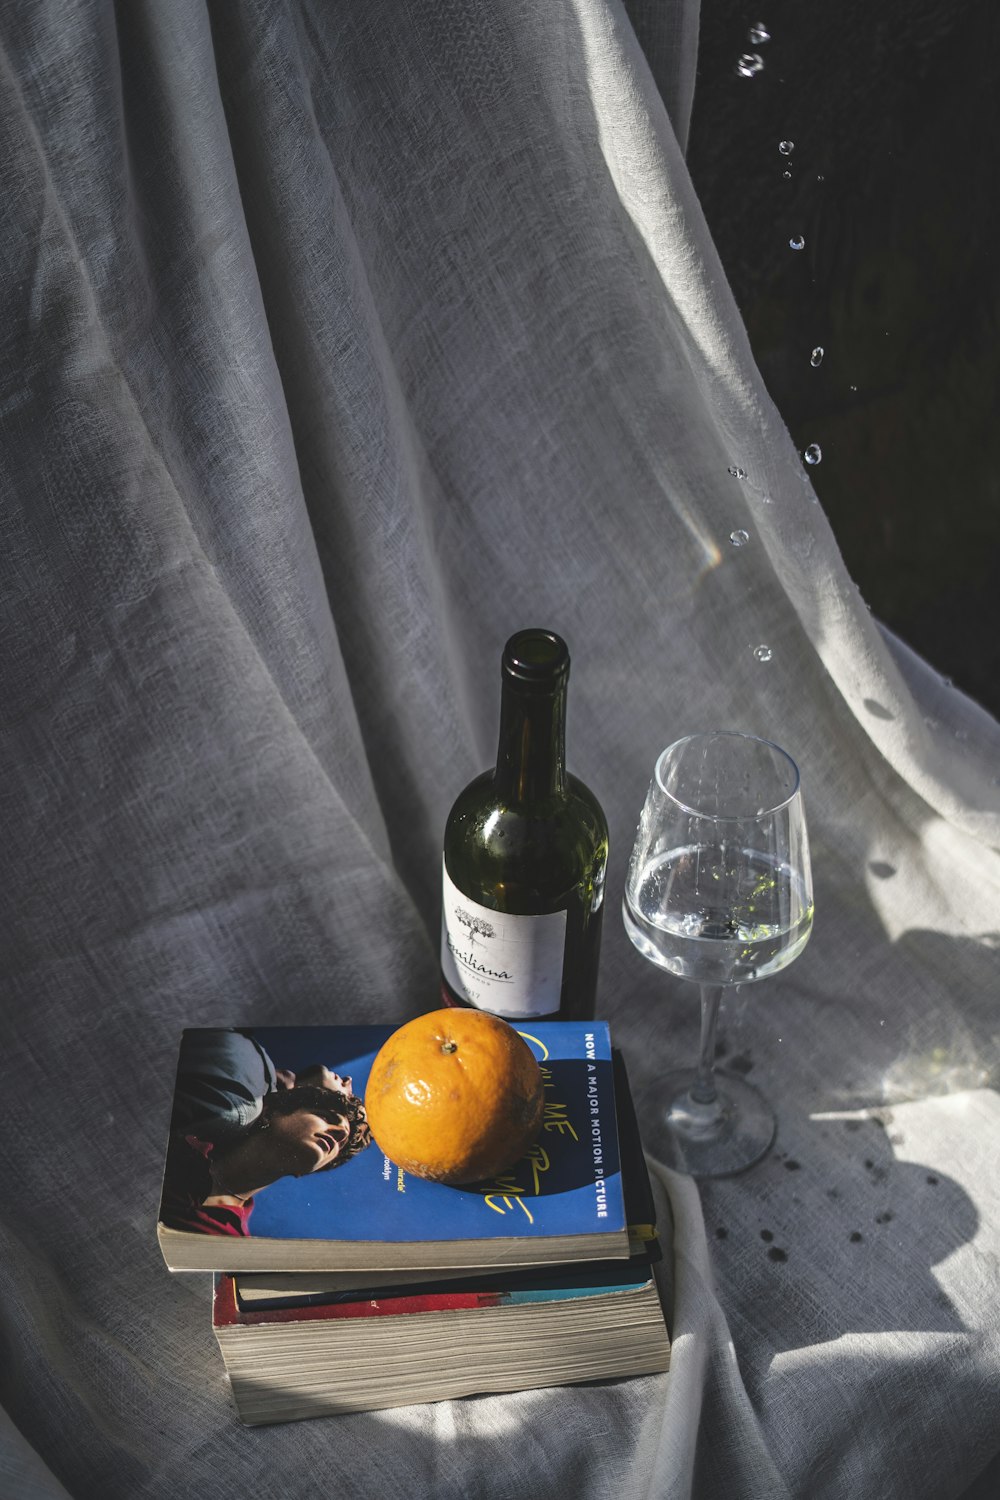 wine bottle beside wine glass on table